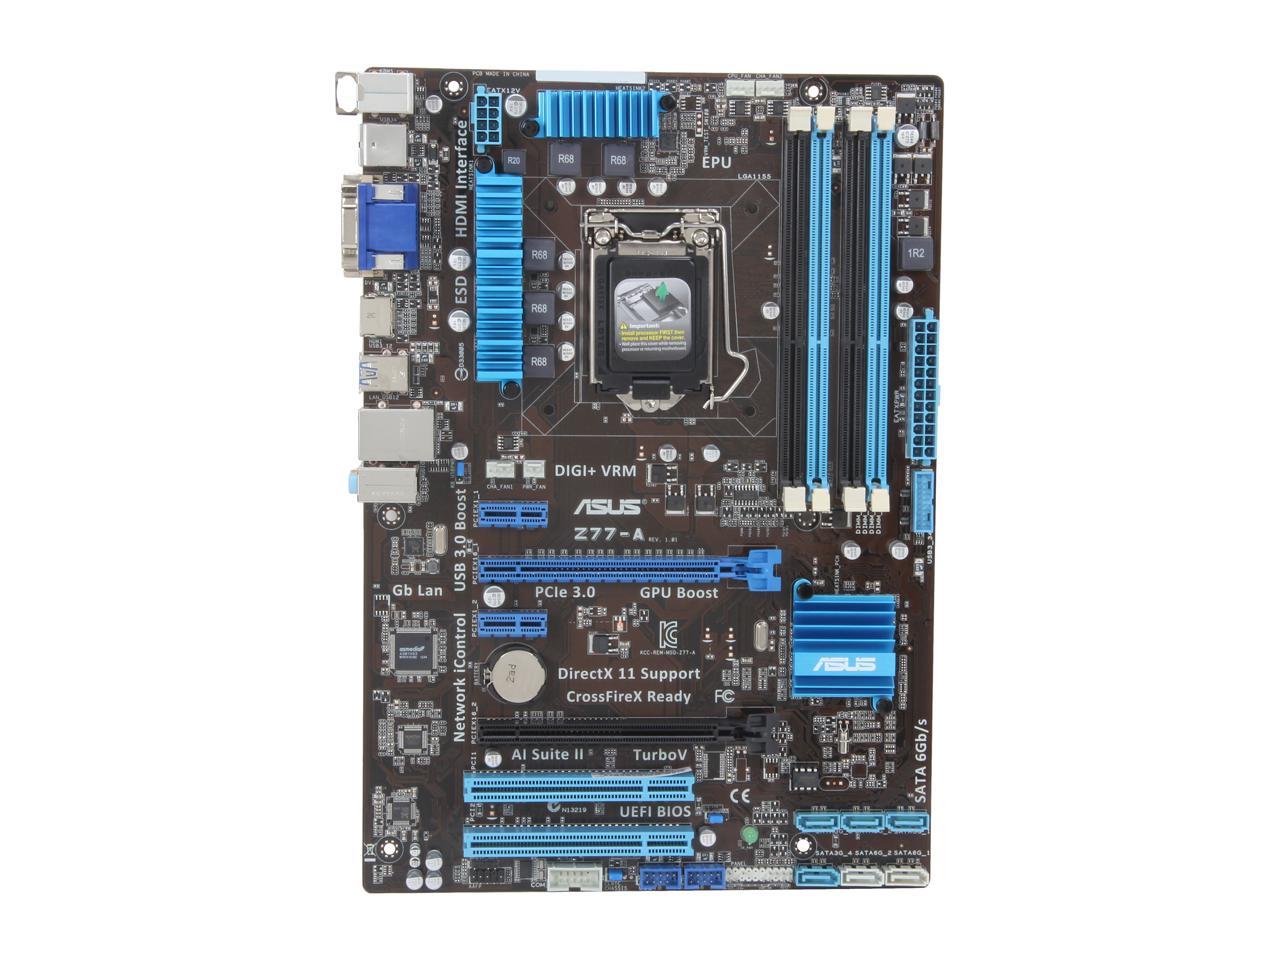 ASUS Z77-A LGA 1155 Intel Z77 HDMI SATA 6Gb/s USB 3.0 ATX Intel Motherboard